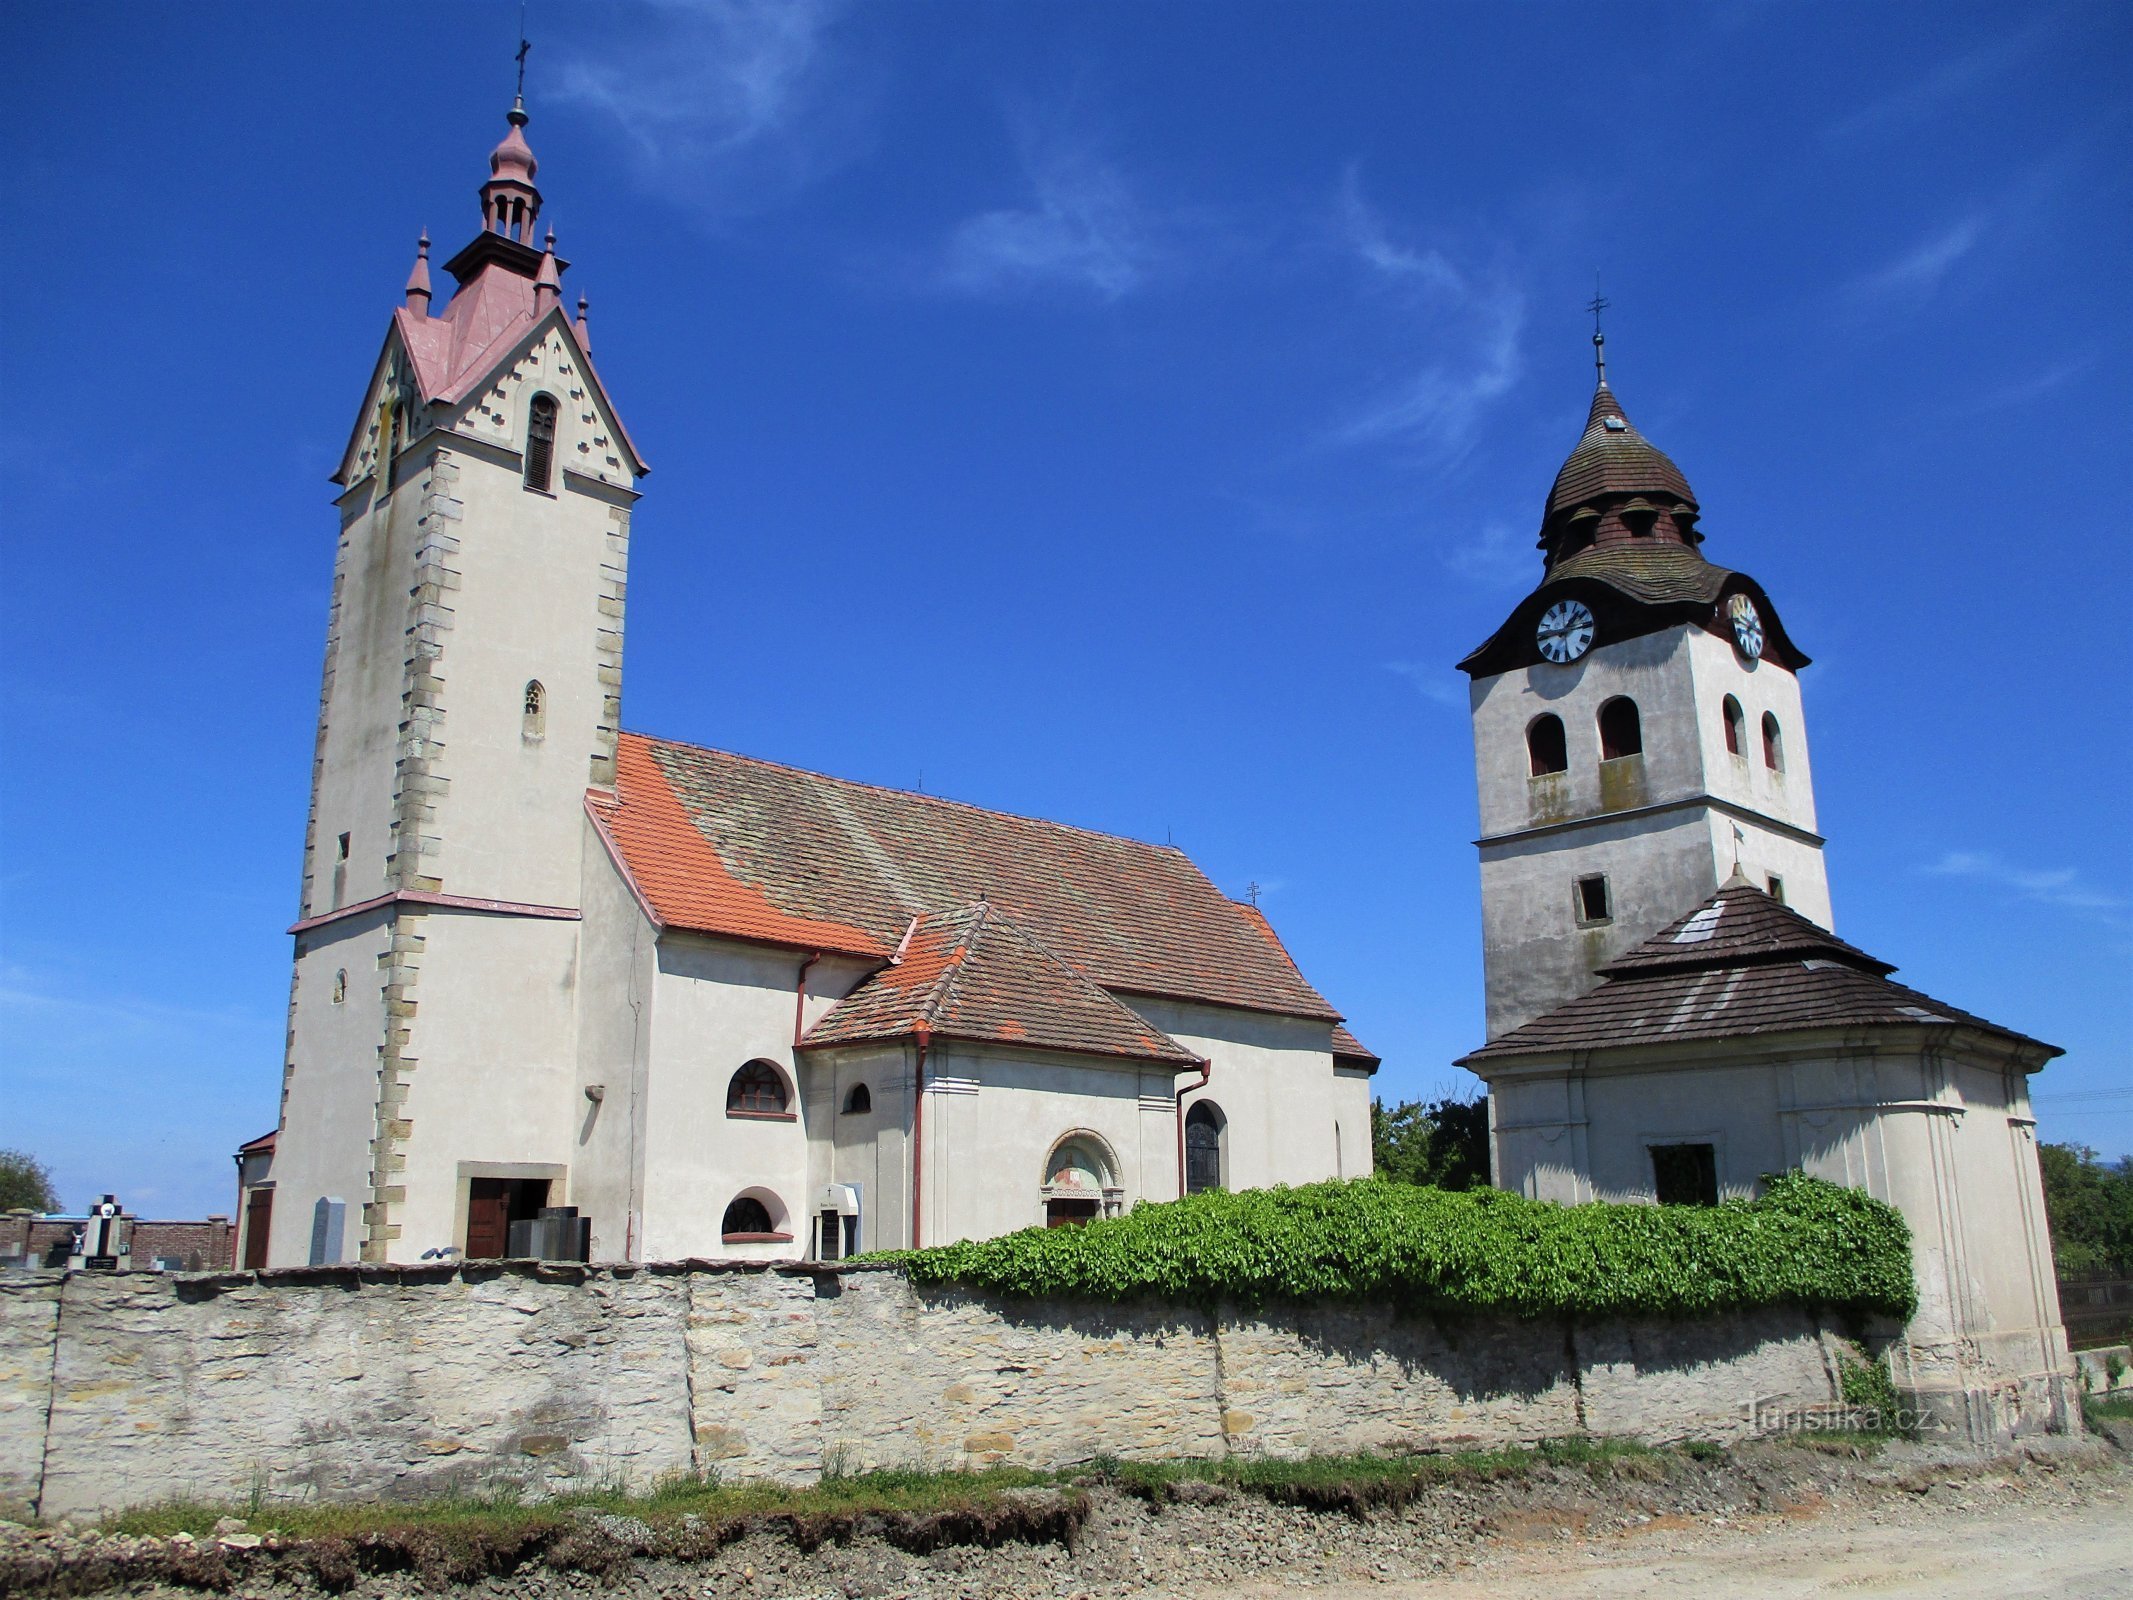 Pyhän kirkko Nikolaus kellotornin kanssa (Bohuslavice nad Metují, 18.5.2020)